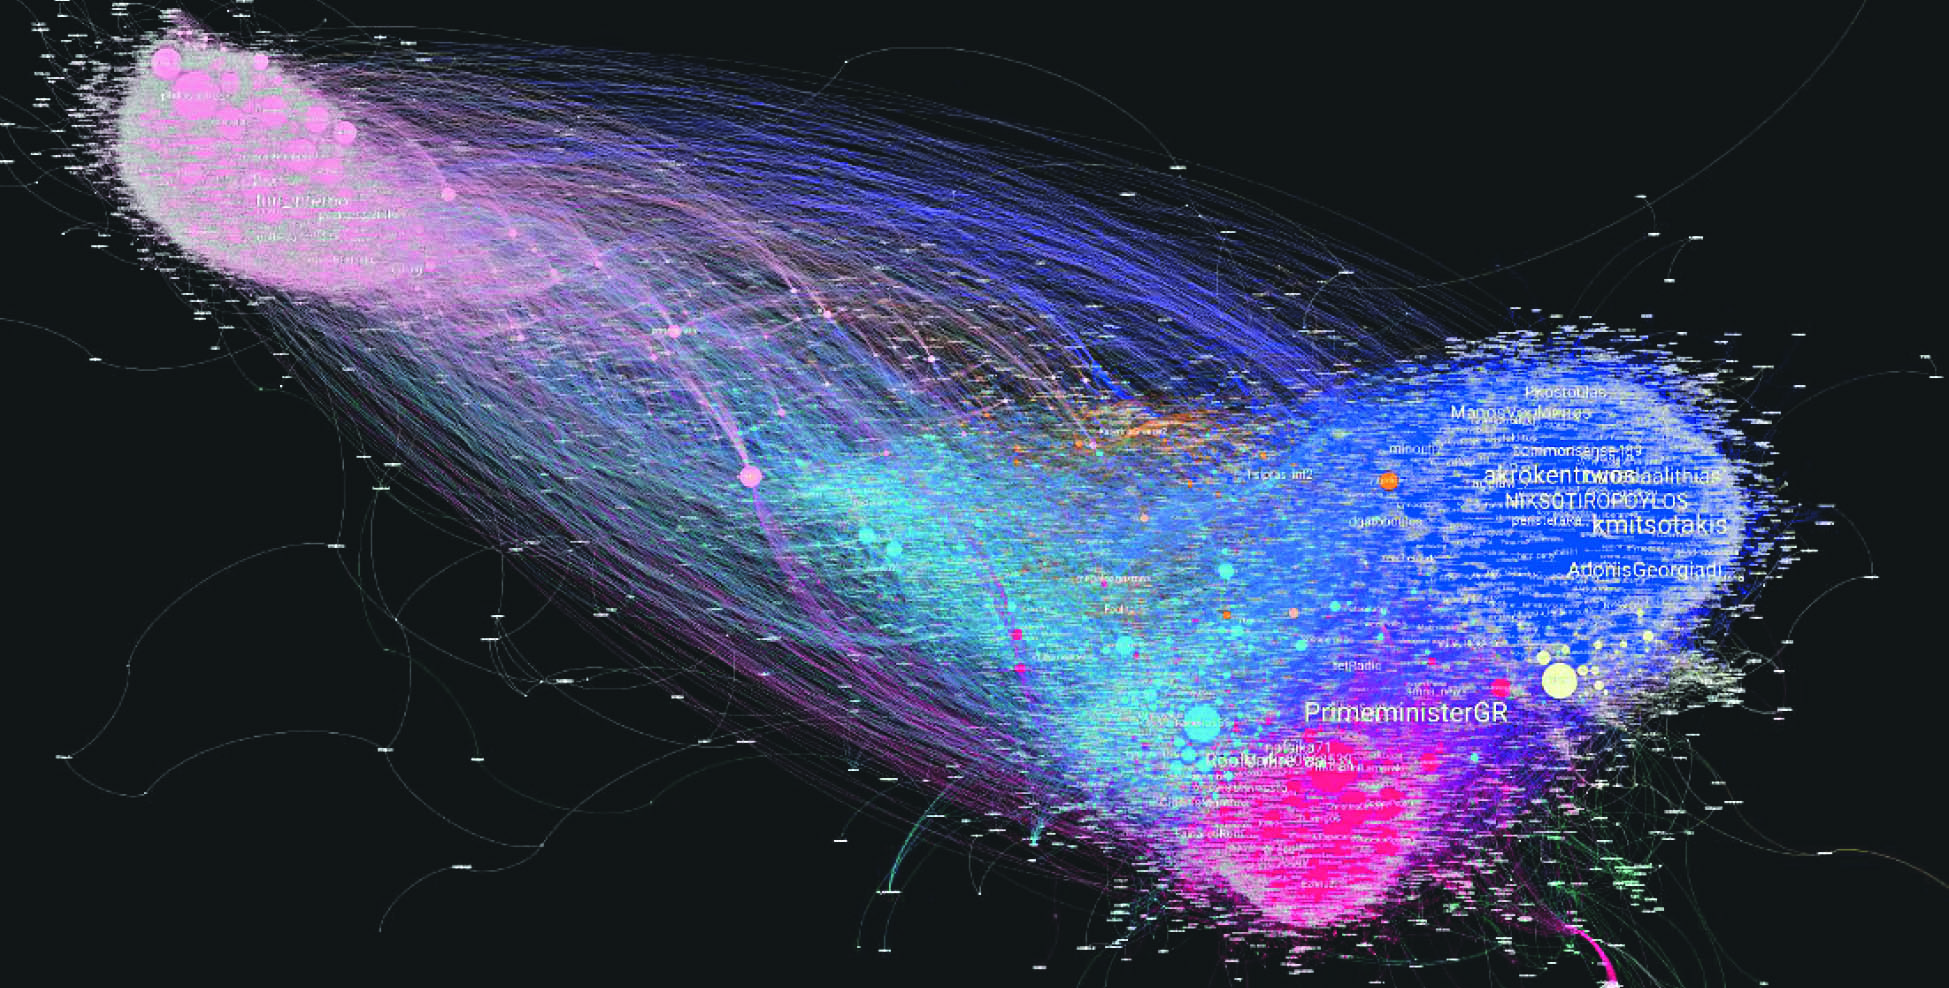 Τα δίκτυα των ελληνικών λογαριασμών στο
twitter, αυθεντικών και bots με βάση το πόσο
αλληλεπιδρούν και αναπαράγονται μεταξύ τους.